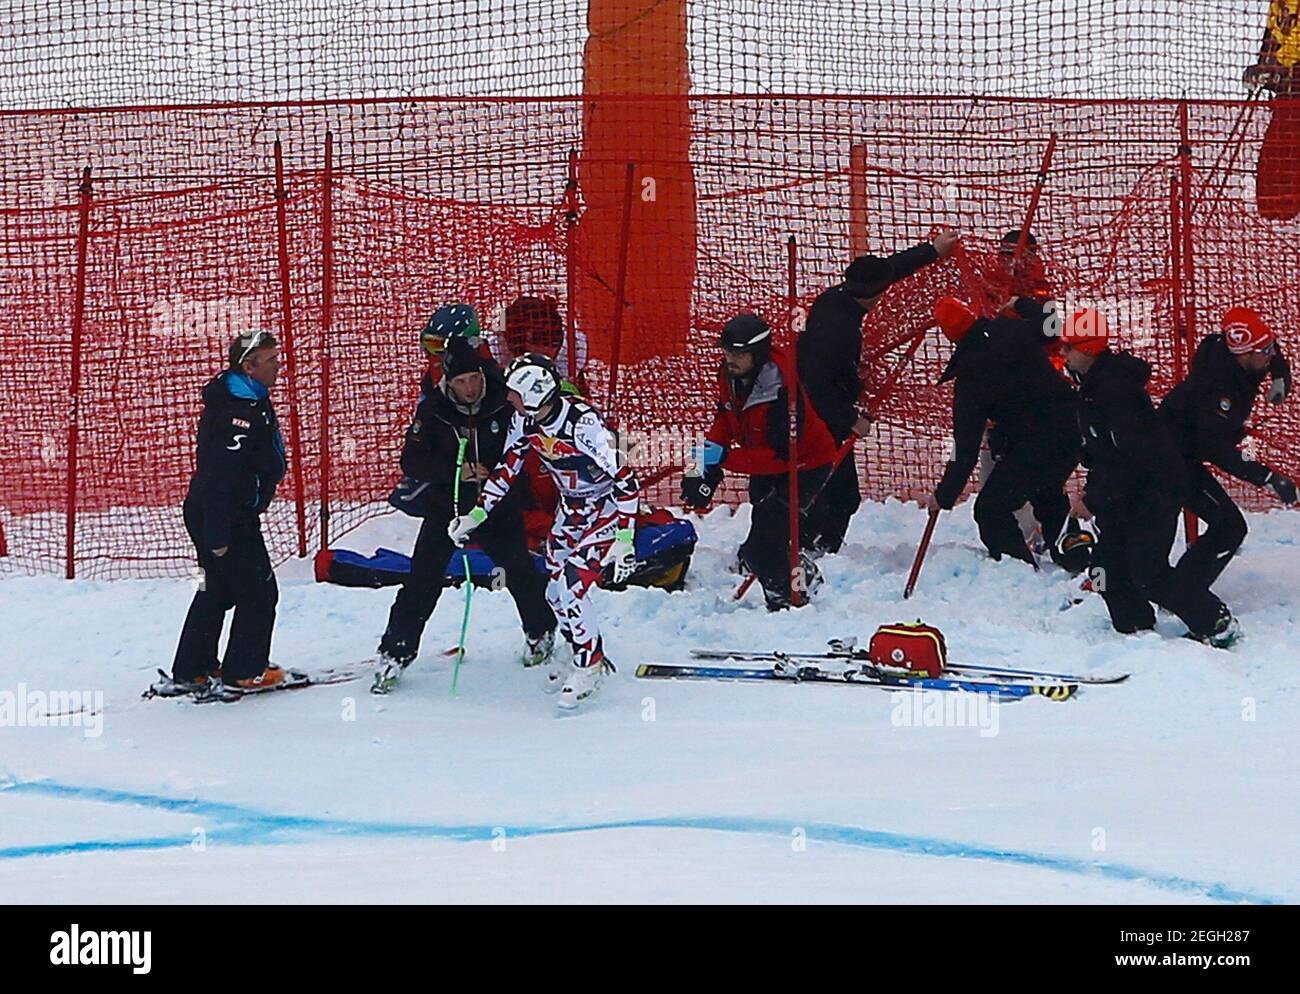 Hannes Reichelt (3e L) d'Autriche est assisté après une collision lors de la course de ski alpin masculine de la coupe du monde de ski alpin à Kitzbuehel, Autriche, le 23 janvier 2016. REUTERS/Dominic Ebenbichler Image fournie par action Images Banque D'Images